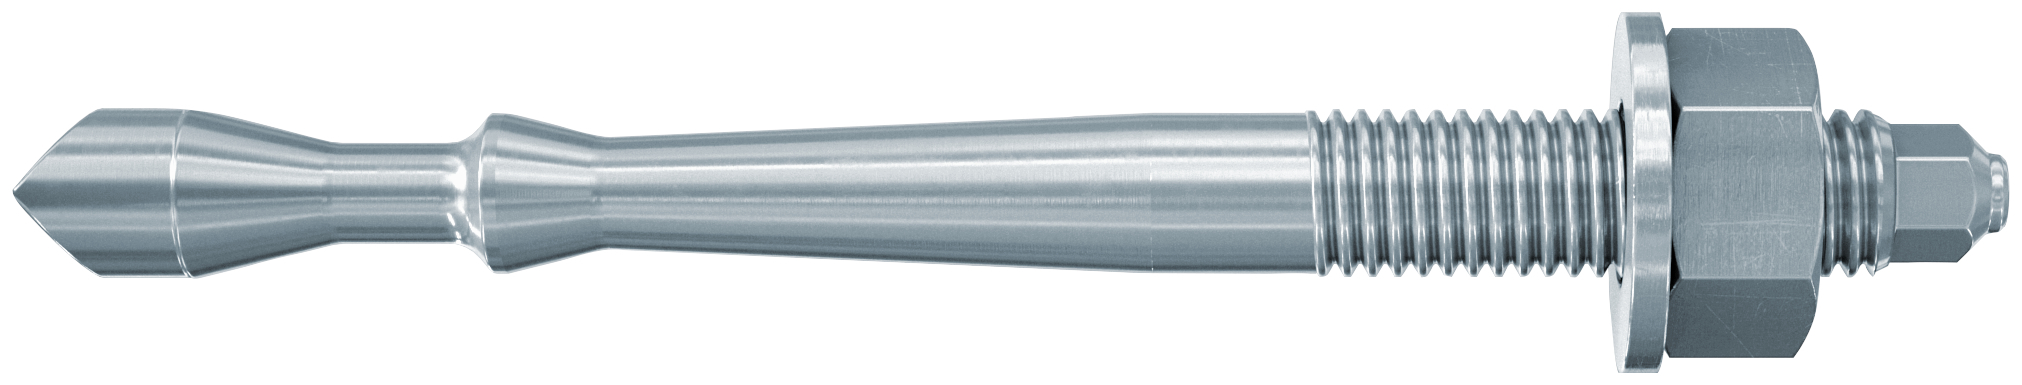 fischer Barra multicono in acciaio FHB II-A S M16x95/60 per ancorante chimico FIS HB (1 Pz.) Barra multicono corta in acciaio zincato classe 8.8. Massime prestazioni a trazione in calcestruzzo fessurato e a ridotte distanze dai bordi..